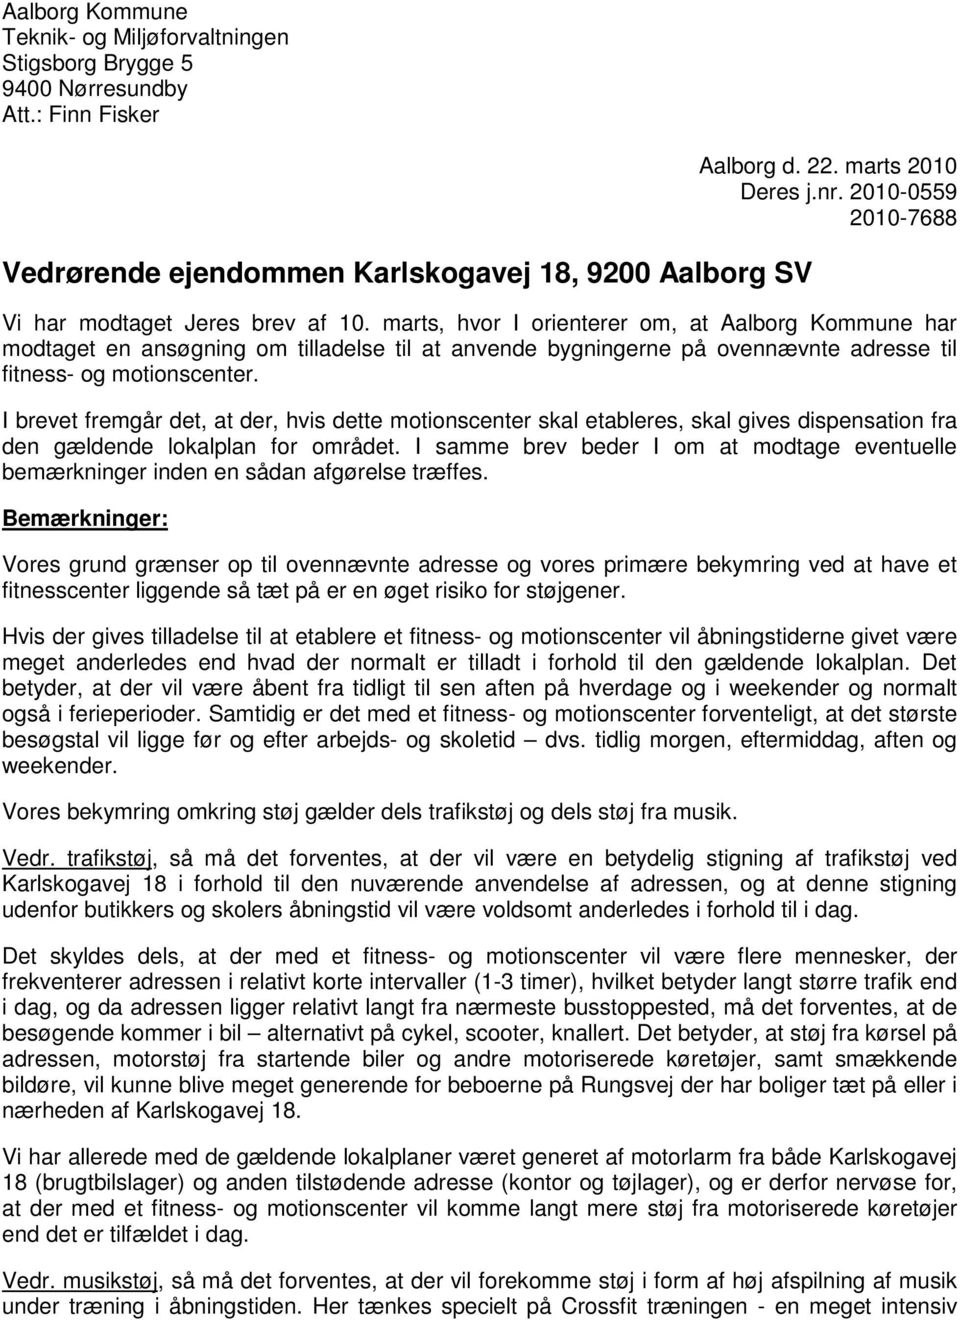 marts, hvor I orienterer om, at Aalborg Kommune har modtaget en ansøgning om tilladelse til at anvende bygningerne på ovennævnte adresse til fitness- og motionscenter.